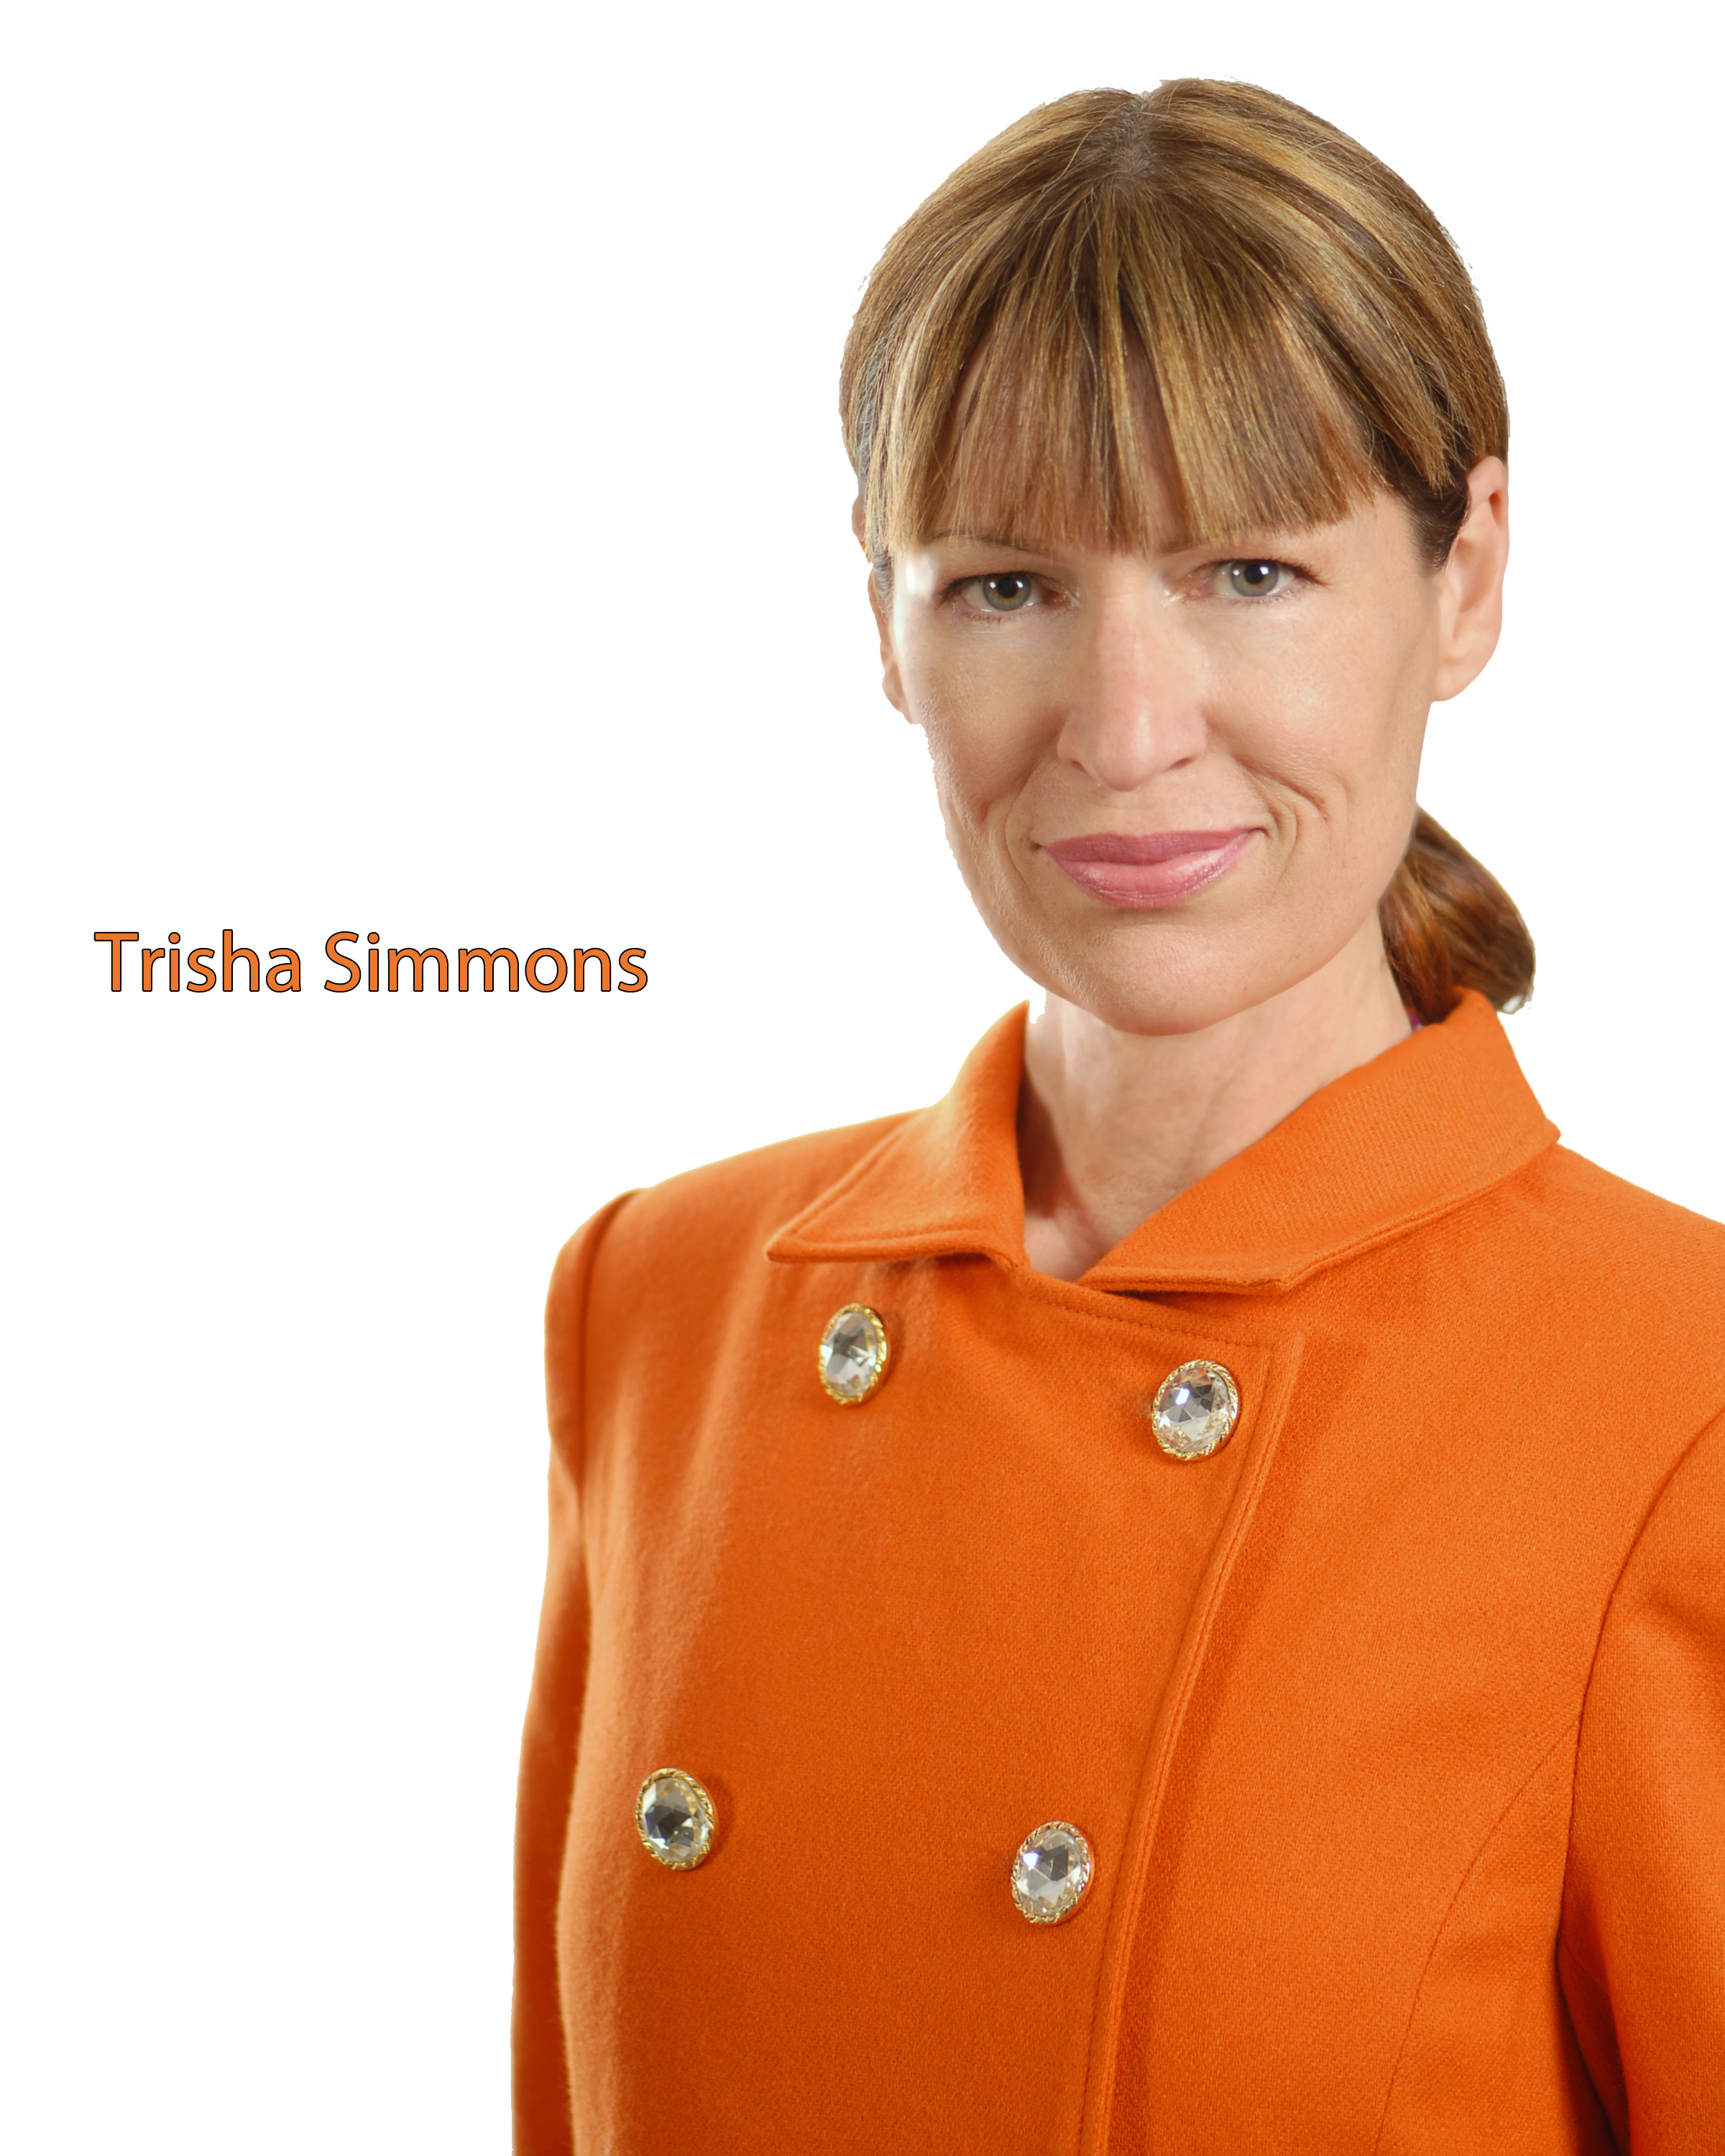 Trisha Simmons